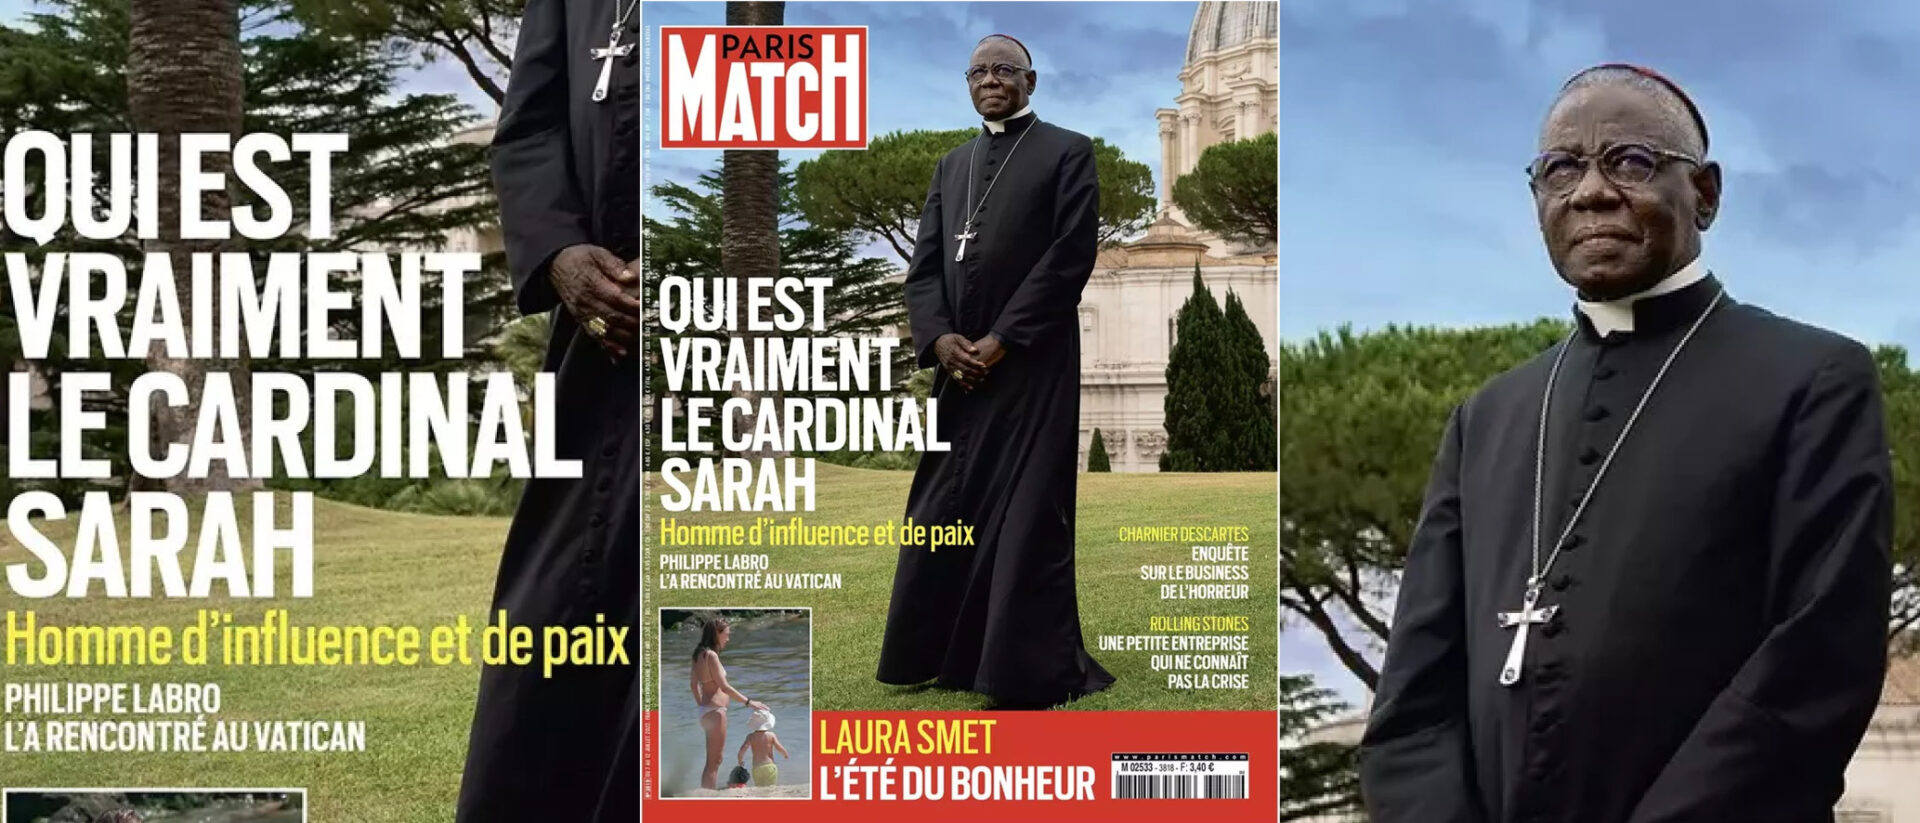 Wer ist Kardinal Sarah wirklich? Diese Ausgabe von "Paris Match" gibt zu reden.